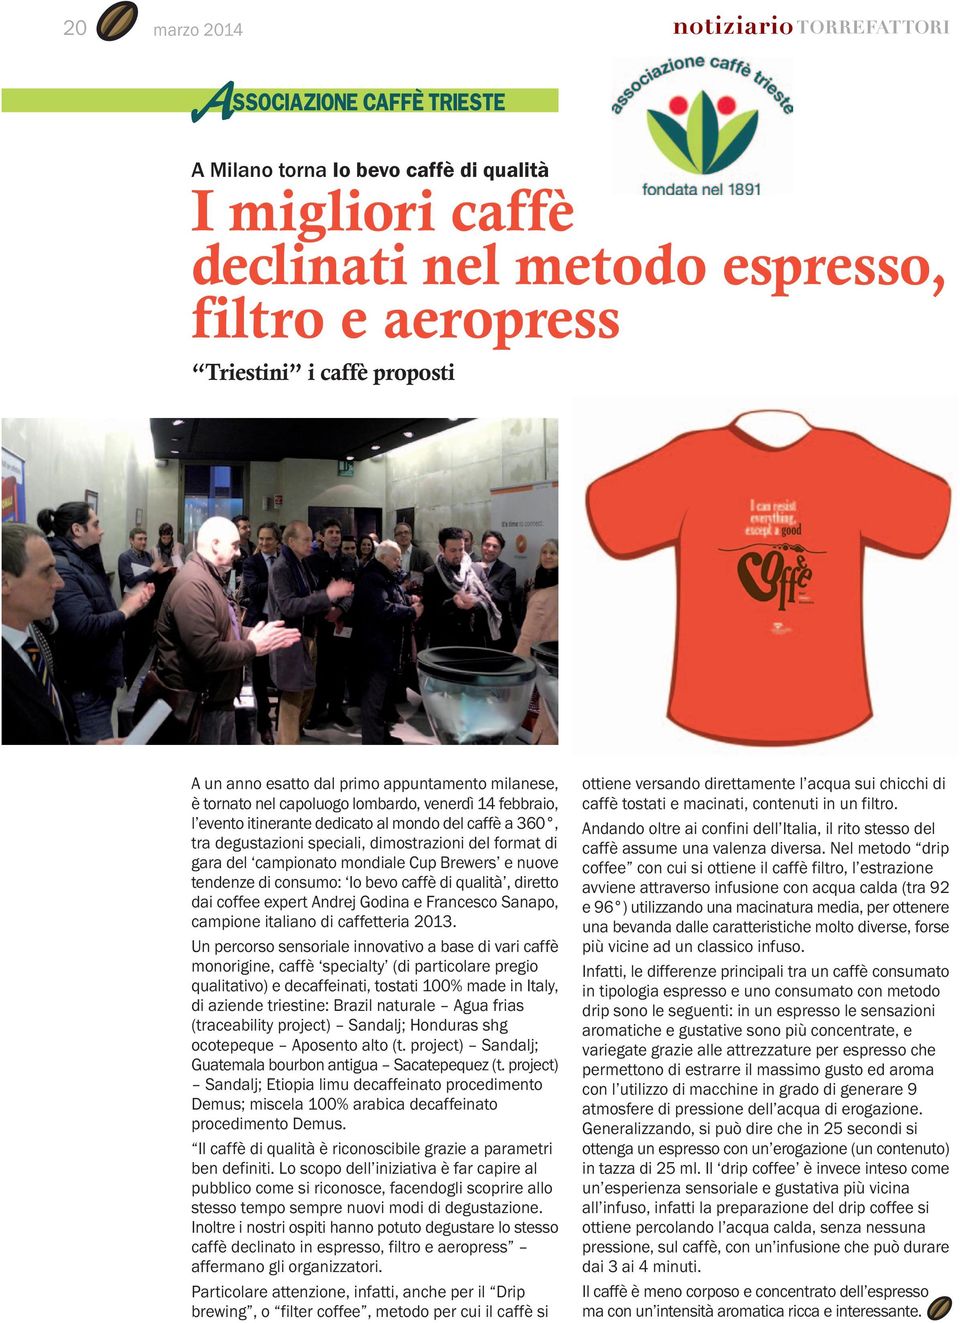 Brewers e nuove tendenze di consumo: Io bevo caffè di qualità, diretto dai coffee expert Andrej Godina e Francesco Sanapo, campione italiano di caffetteria 2013.